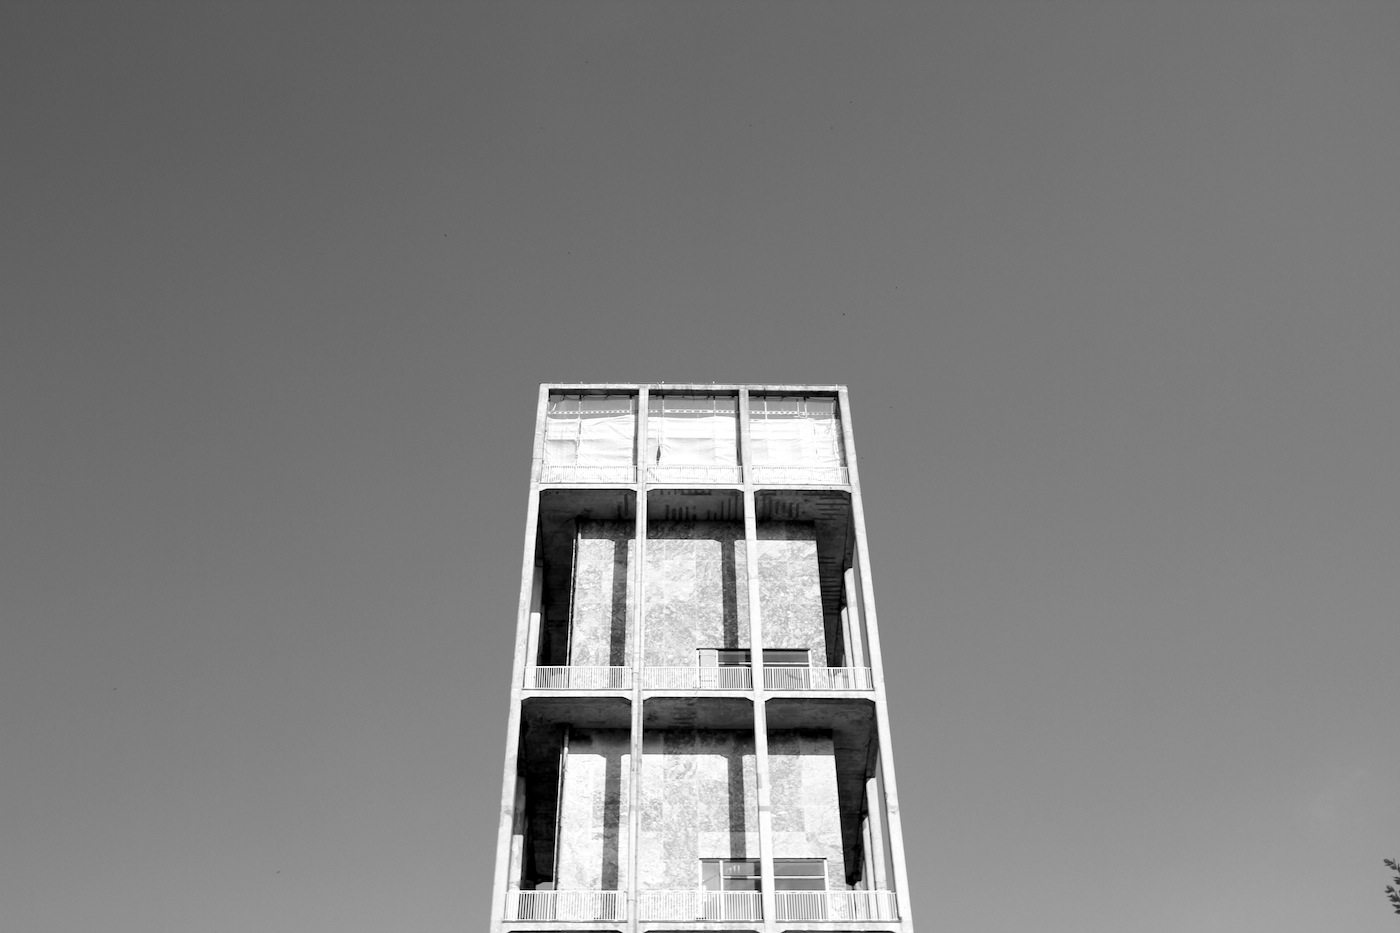 Entworfen von Arne Jacobsen und Erik Møller, die auf diese Weise den skandinavischen Funktionalismus mit geprägt haben. Der Turm ist 60 Meter hoch. Das Rathaus wurde 1941 fertiggestellt und 1995 als Denkmal deklariert.